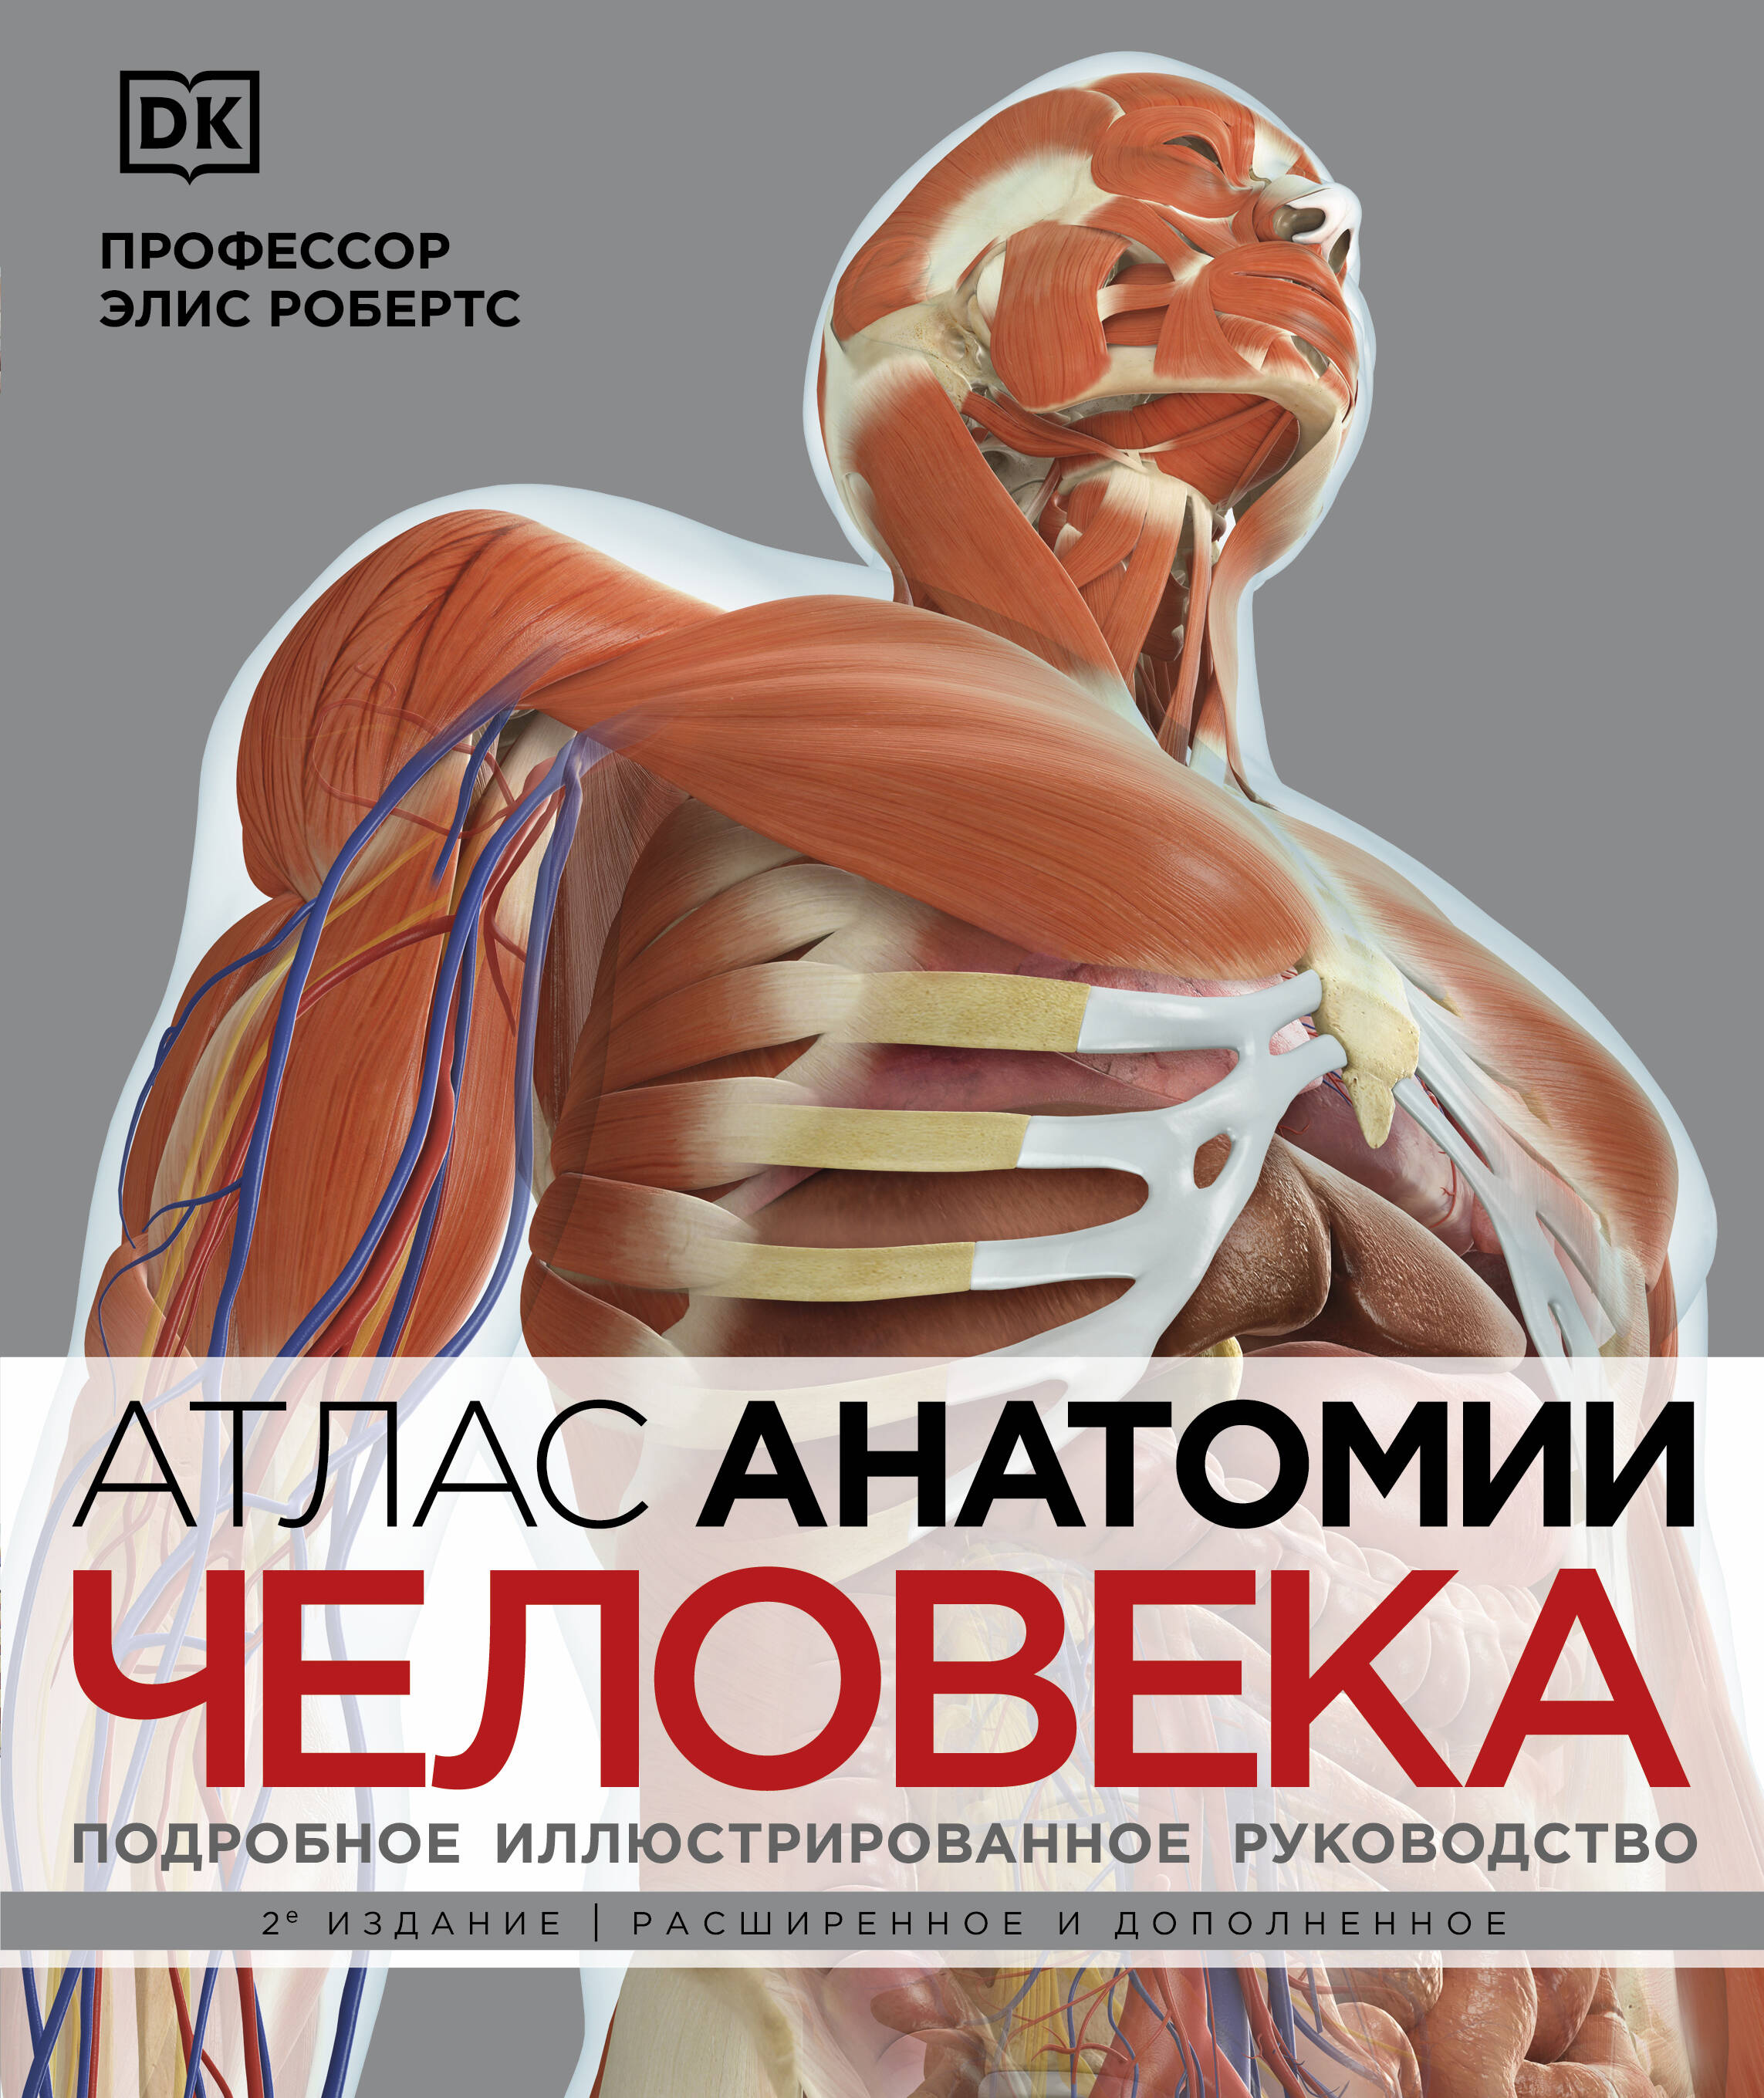 Атлас анатомии человека. Подробное иллюстрированное руководство шарп джон microsoft visual c подробное руководство 8 е издание подробное руководство